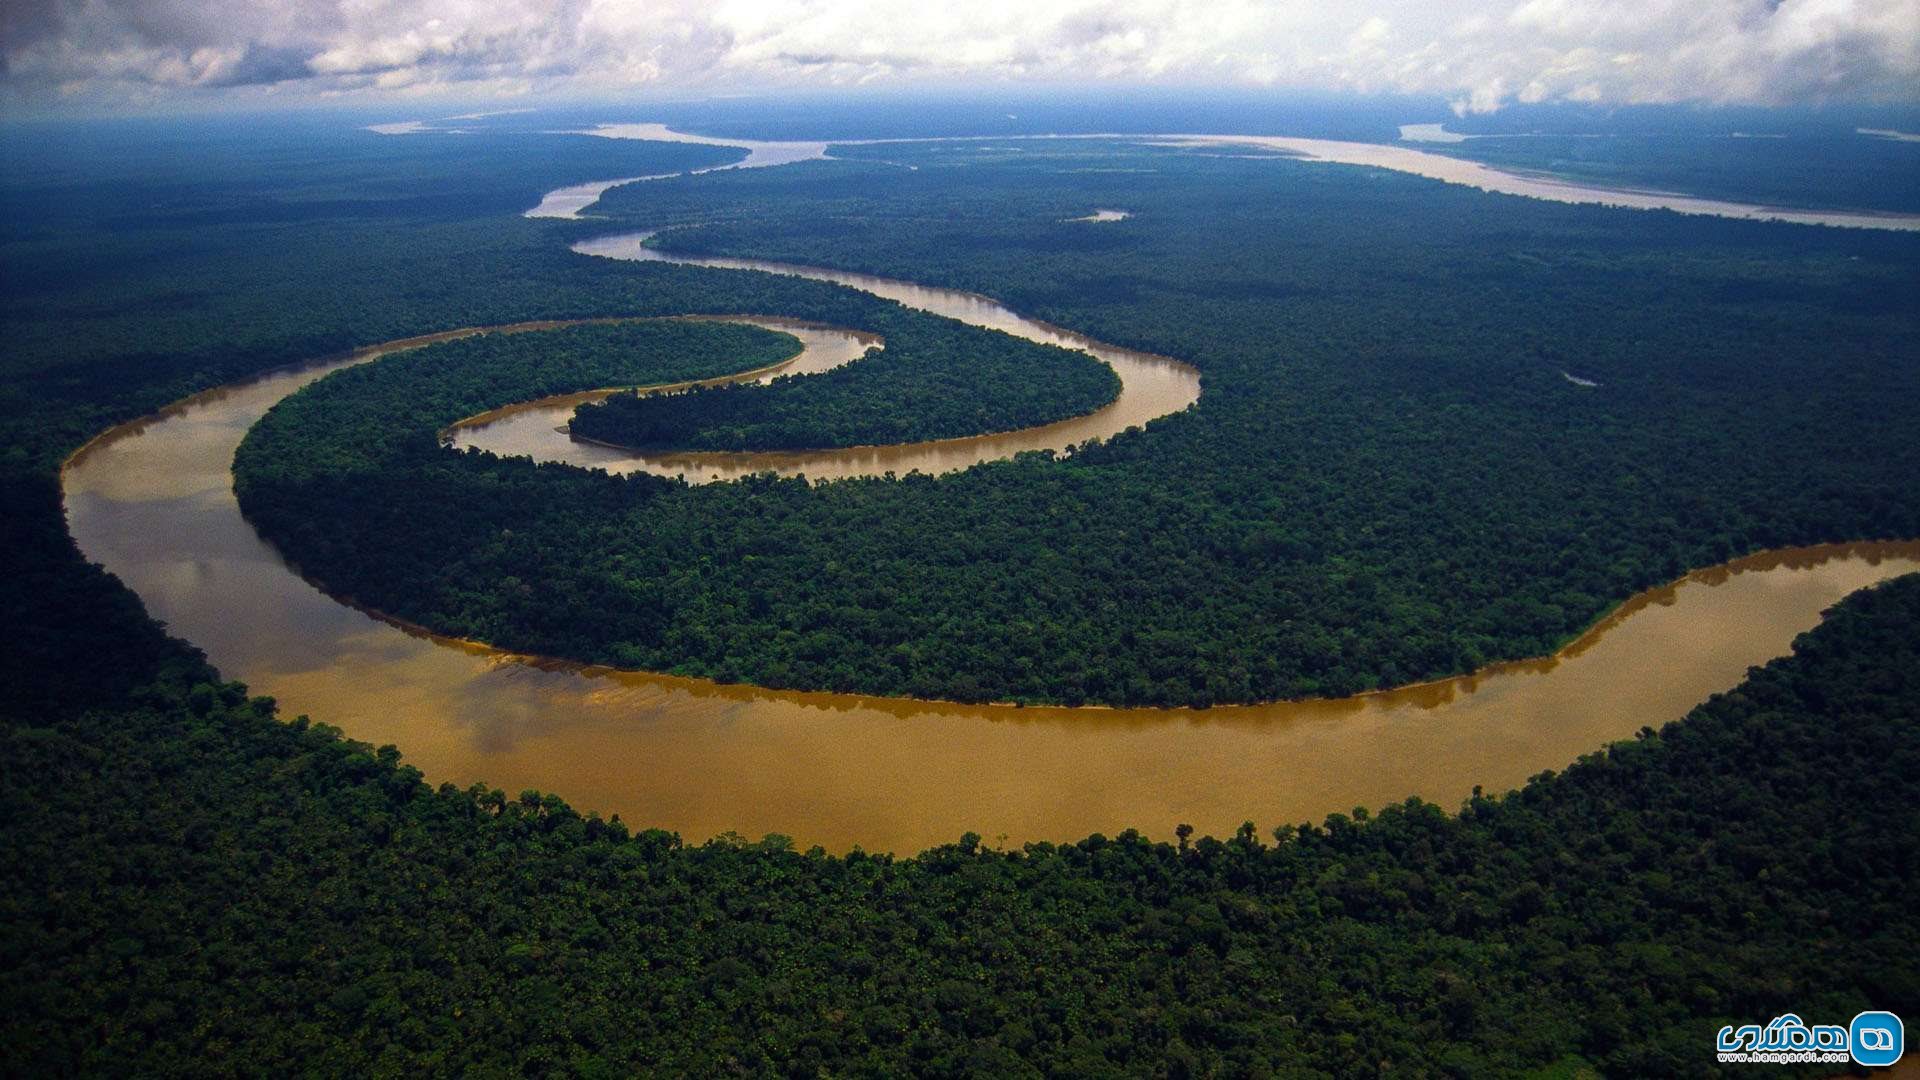  دریاچه ی آمازون، امریکای جنوبی